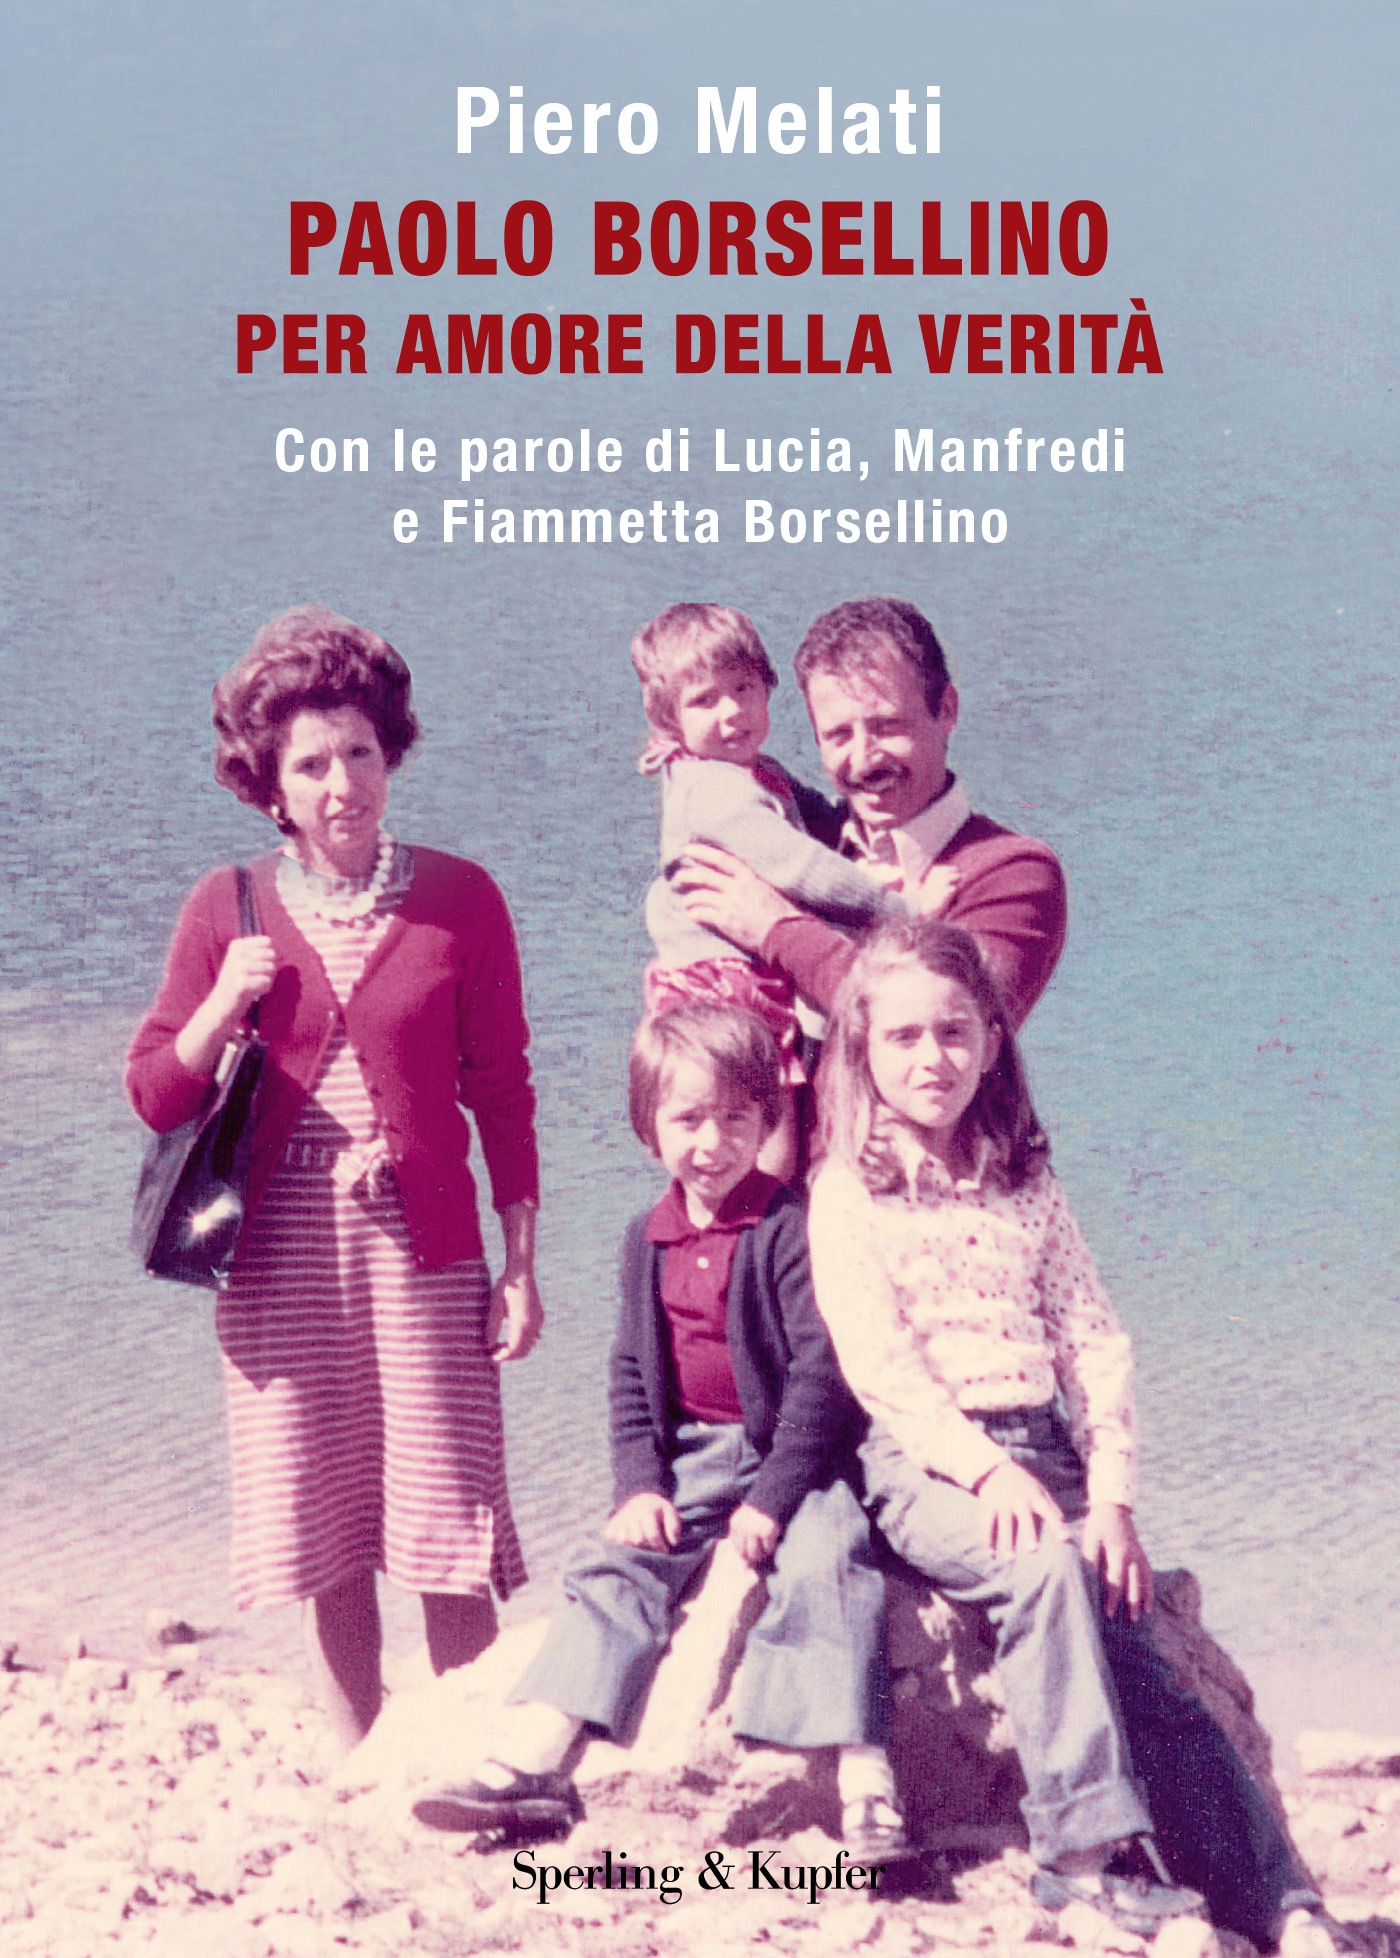 Palermo: si presenta il libro di Piero Melati "Paolo Borsellino, per amore della verità